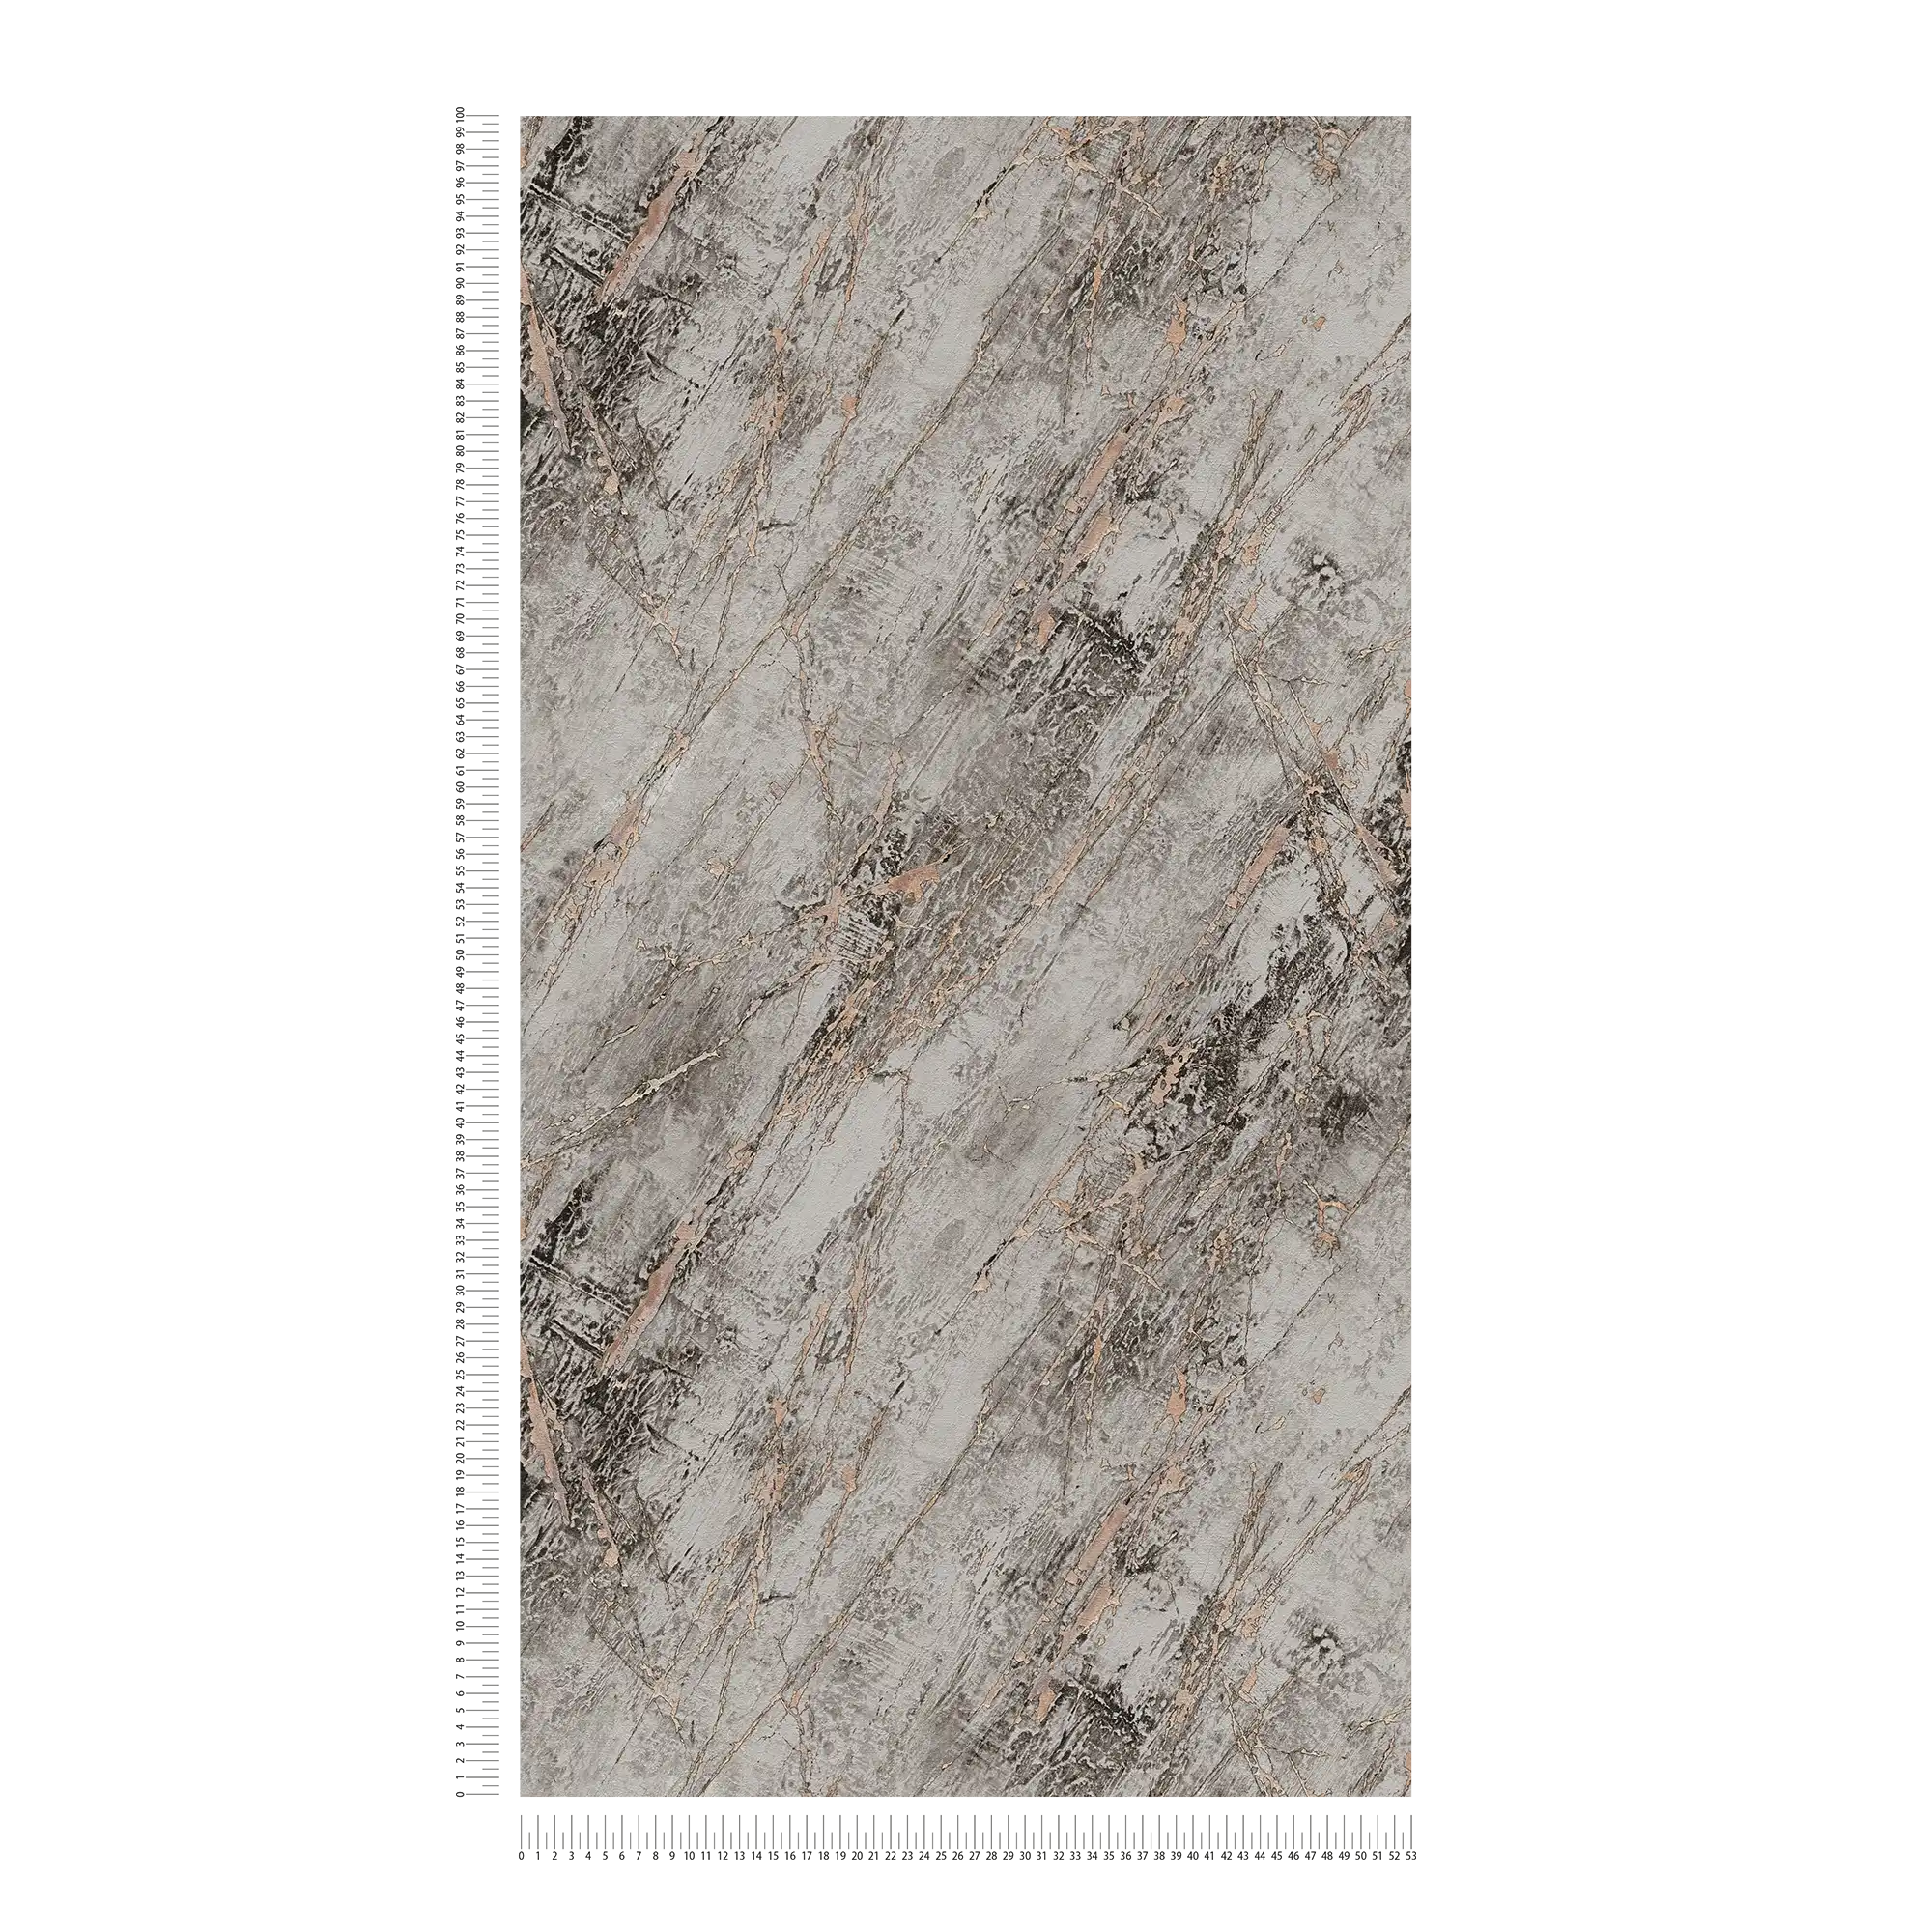             Carta da parati in marmo grigio con effetto metallizzato - grigio, beige
        